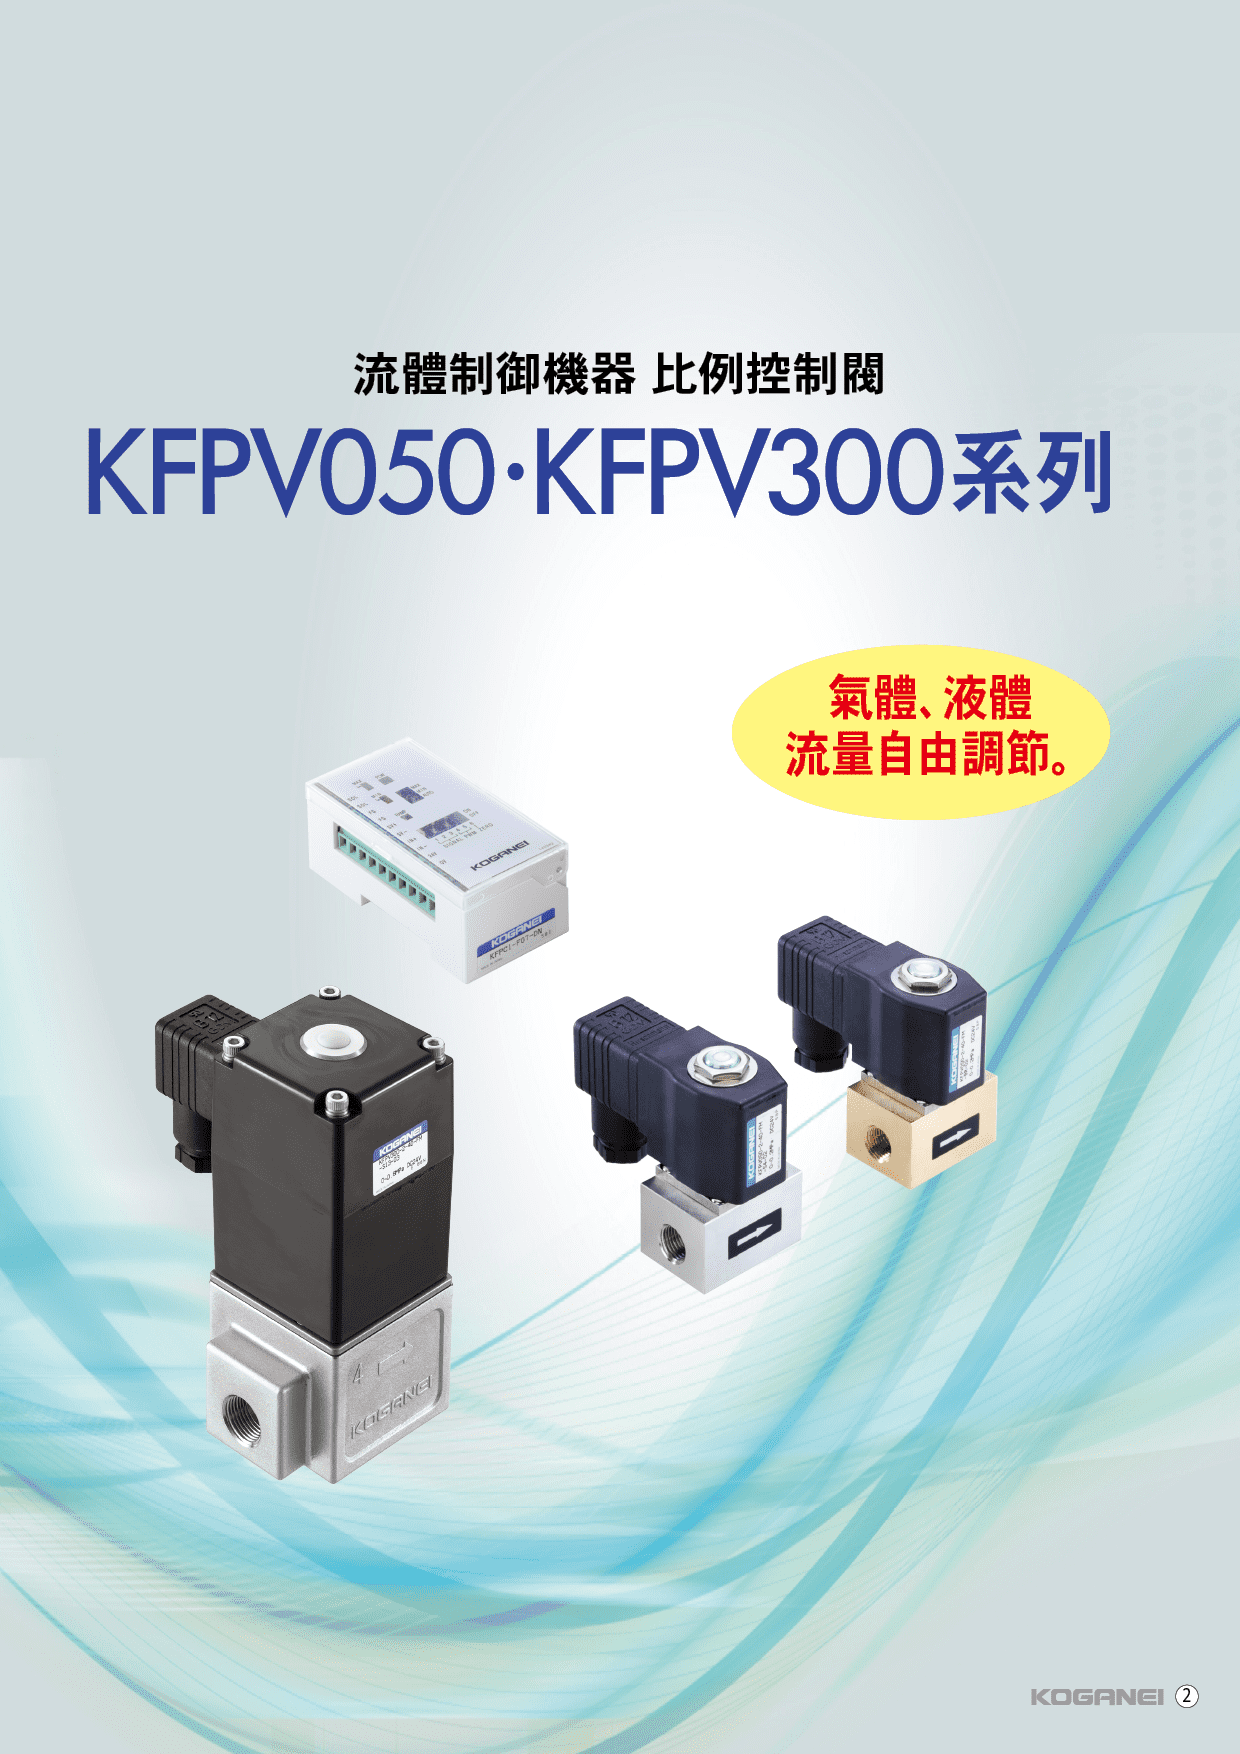 比例控制閥(KFPV050)-產品特色1